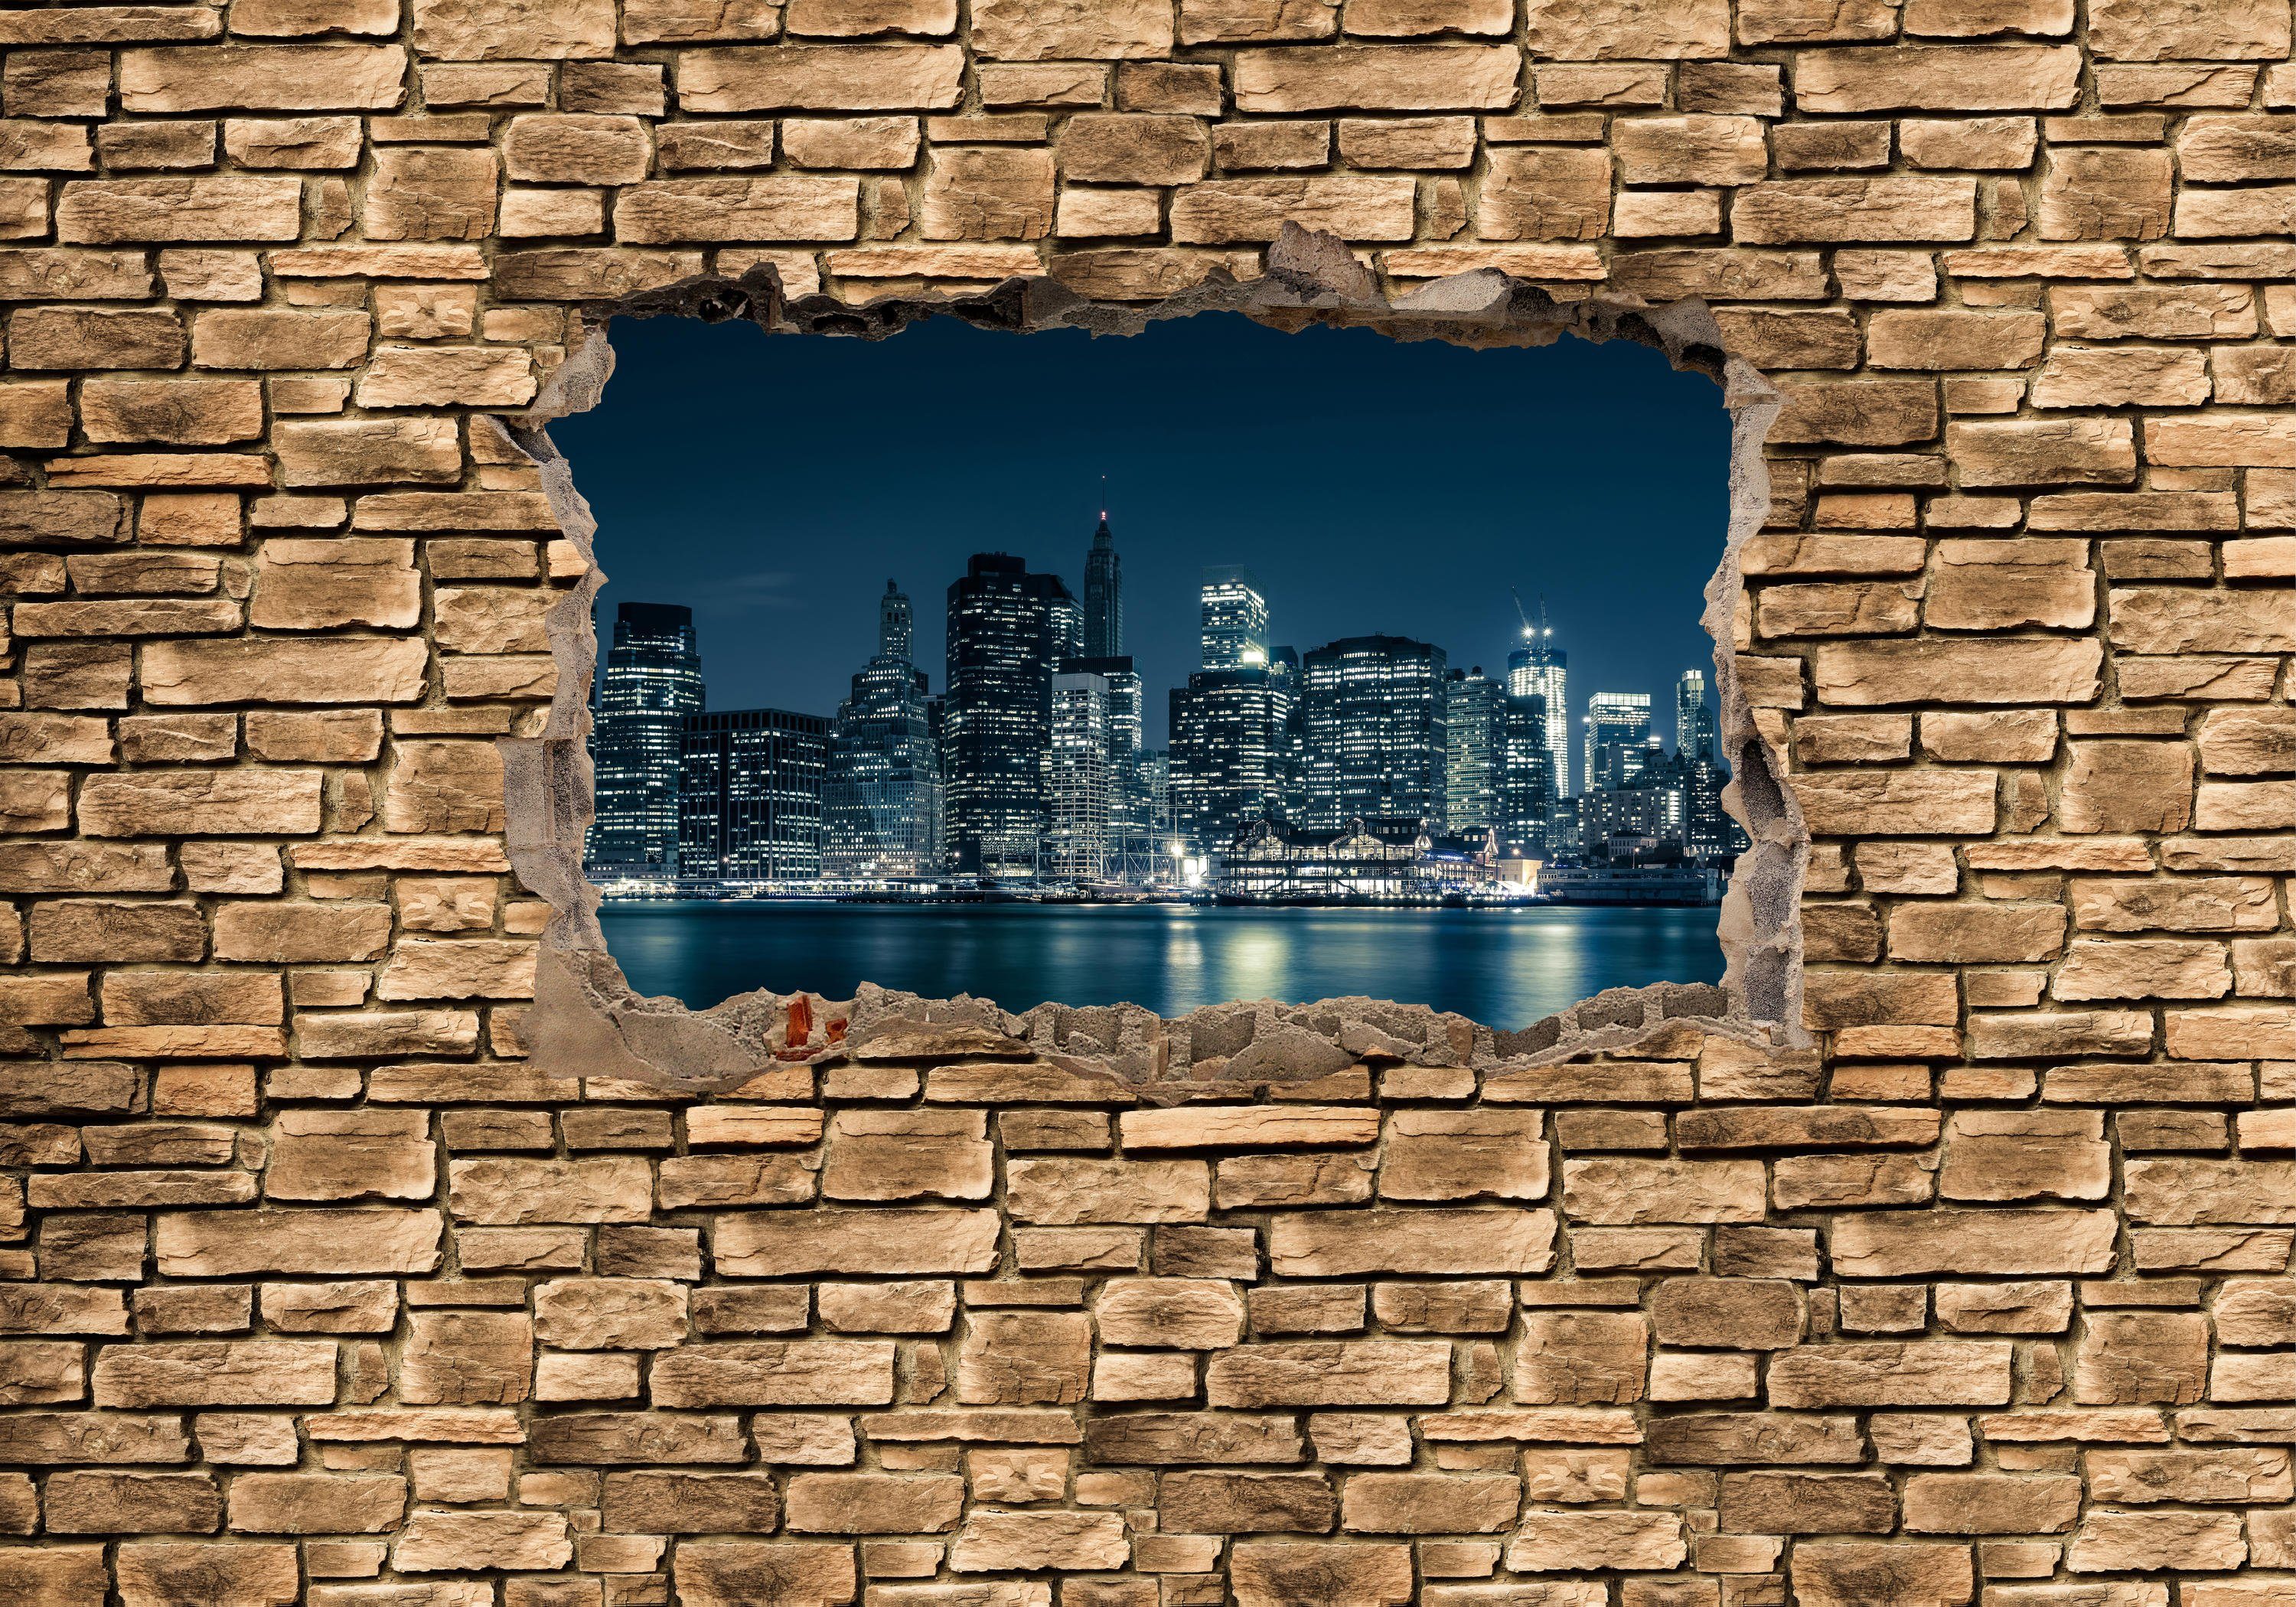 wandmotiv24 Fototapete 3D New York City by Nacht - Steinmauer, glatt, Wandtapete, Motivtapete, matt, Vliestapete